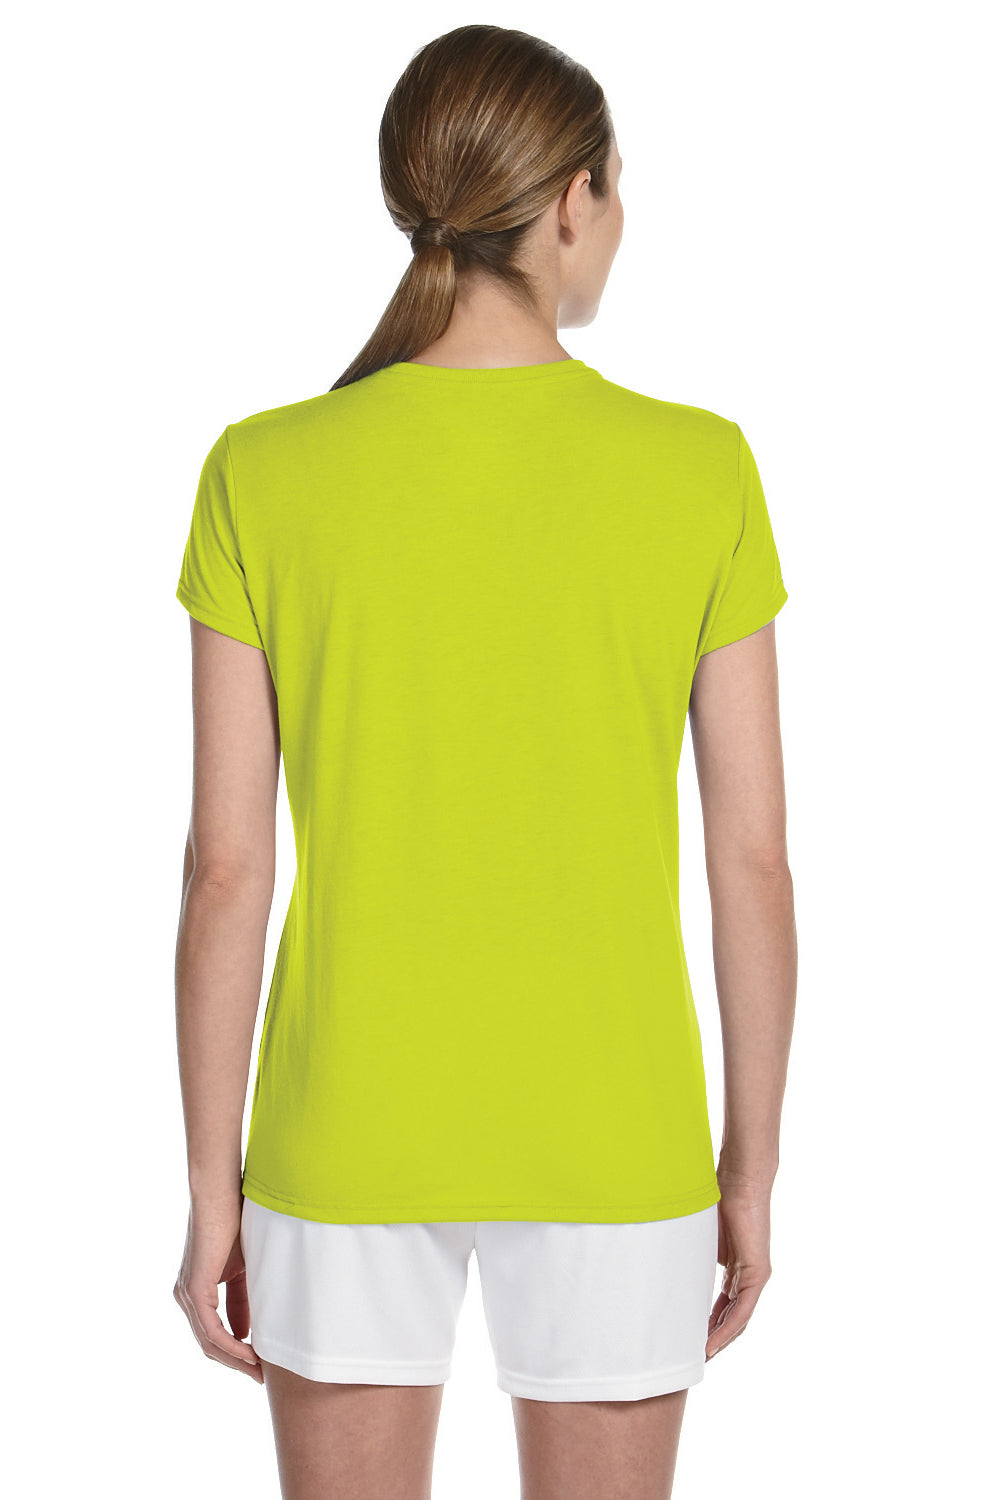 Gildan G420L Womens Performance Jersey Moisture Wicking Short Sleeve Crewneck T-Shirt Safety Green Back